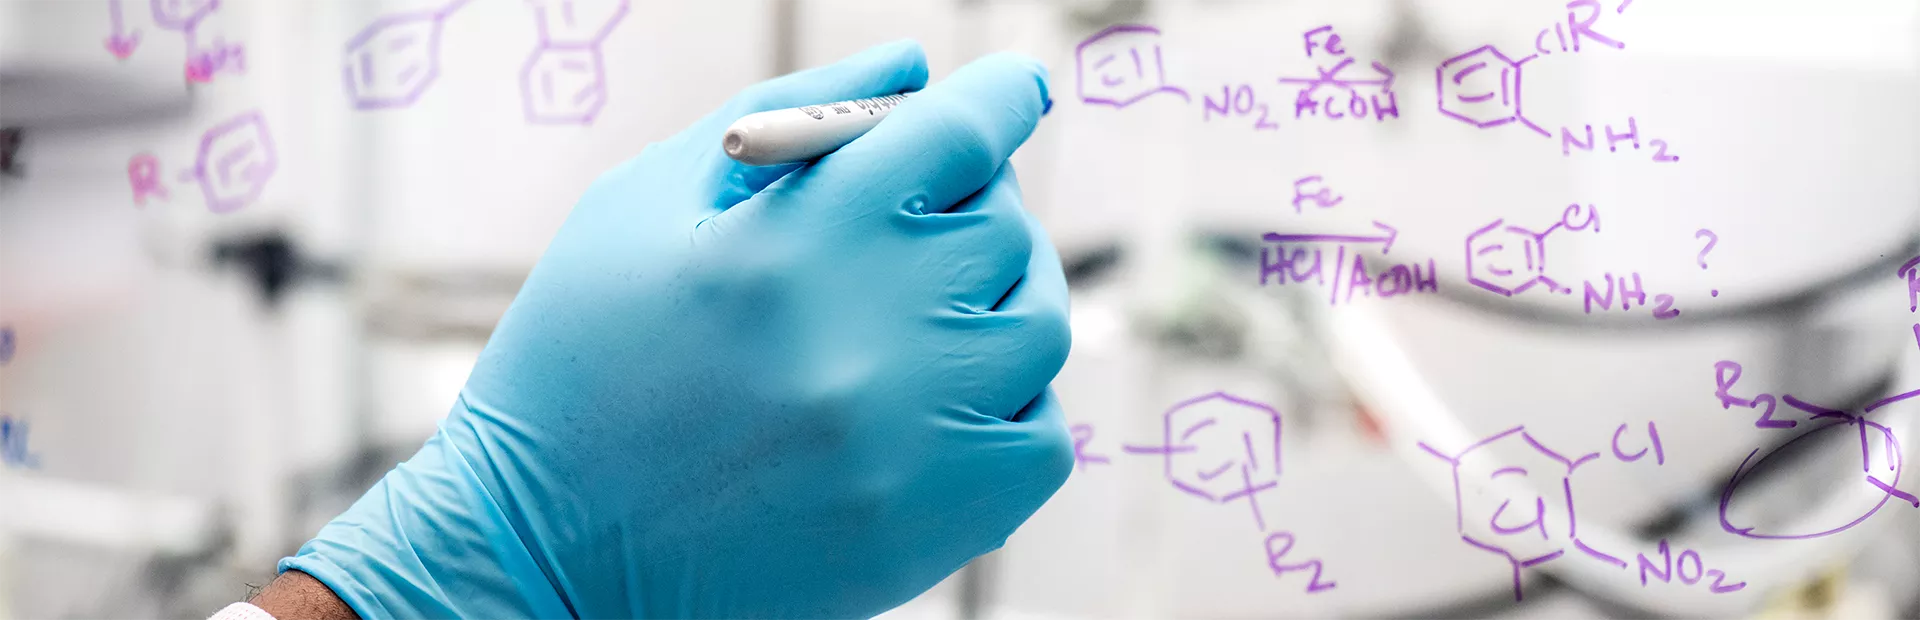 Wissenschaftler schreibt chemische Formel auf eine Glaswand